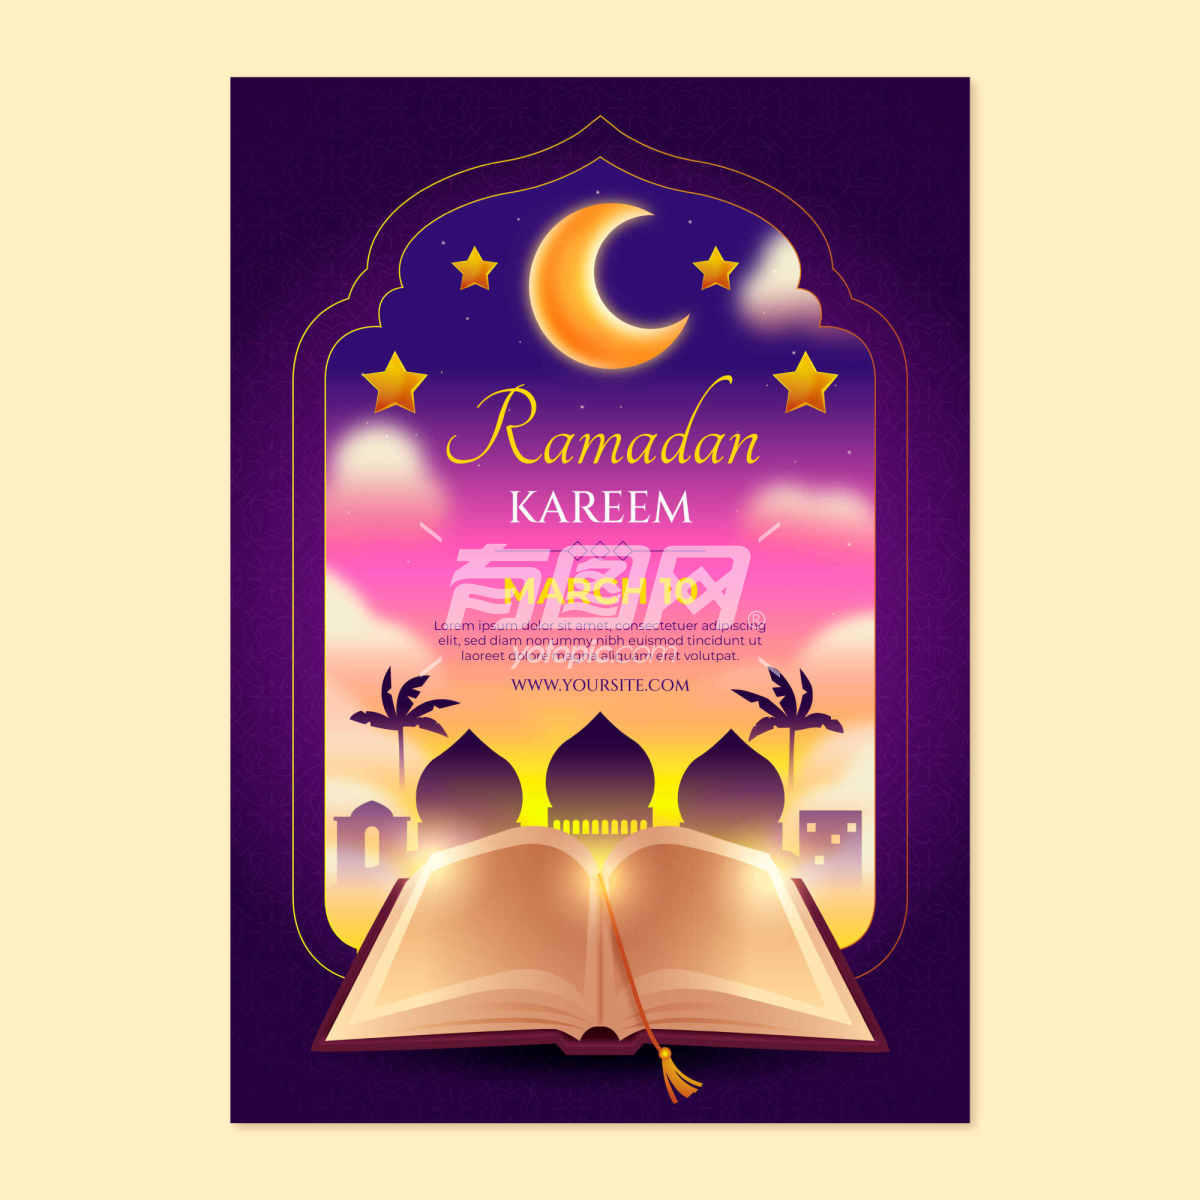 伊斯兰教节日“斋月”的海报